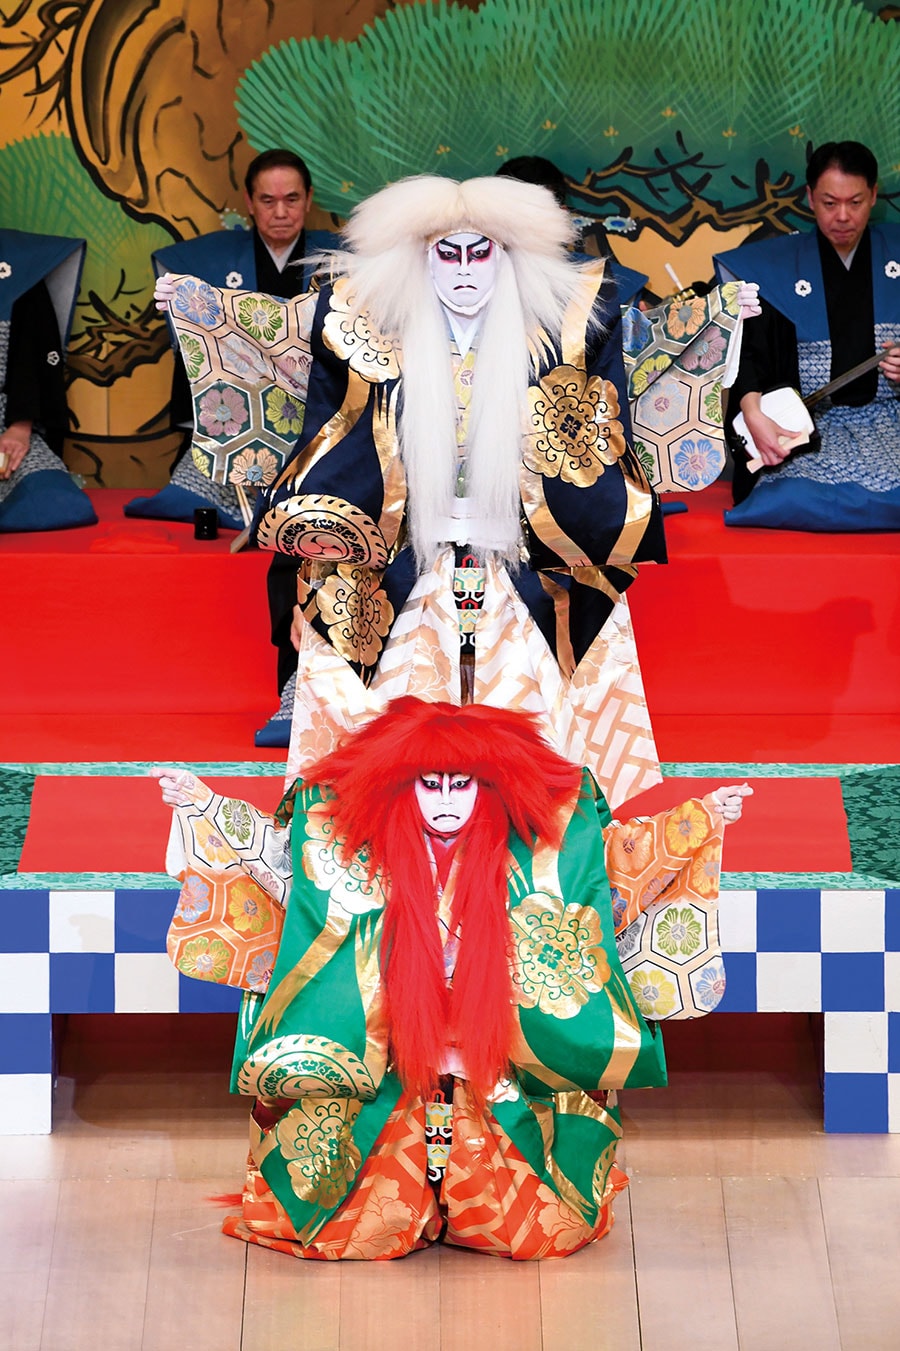 2020年1月歌舞伎座『連獅子』に出演する團子さん(写真下)。叔父である市川猿之助さんと共演。©松竹